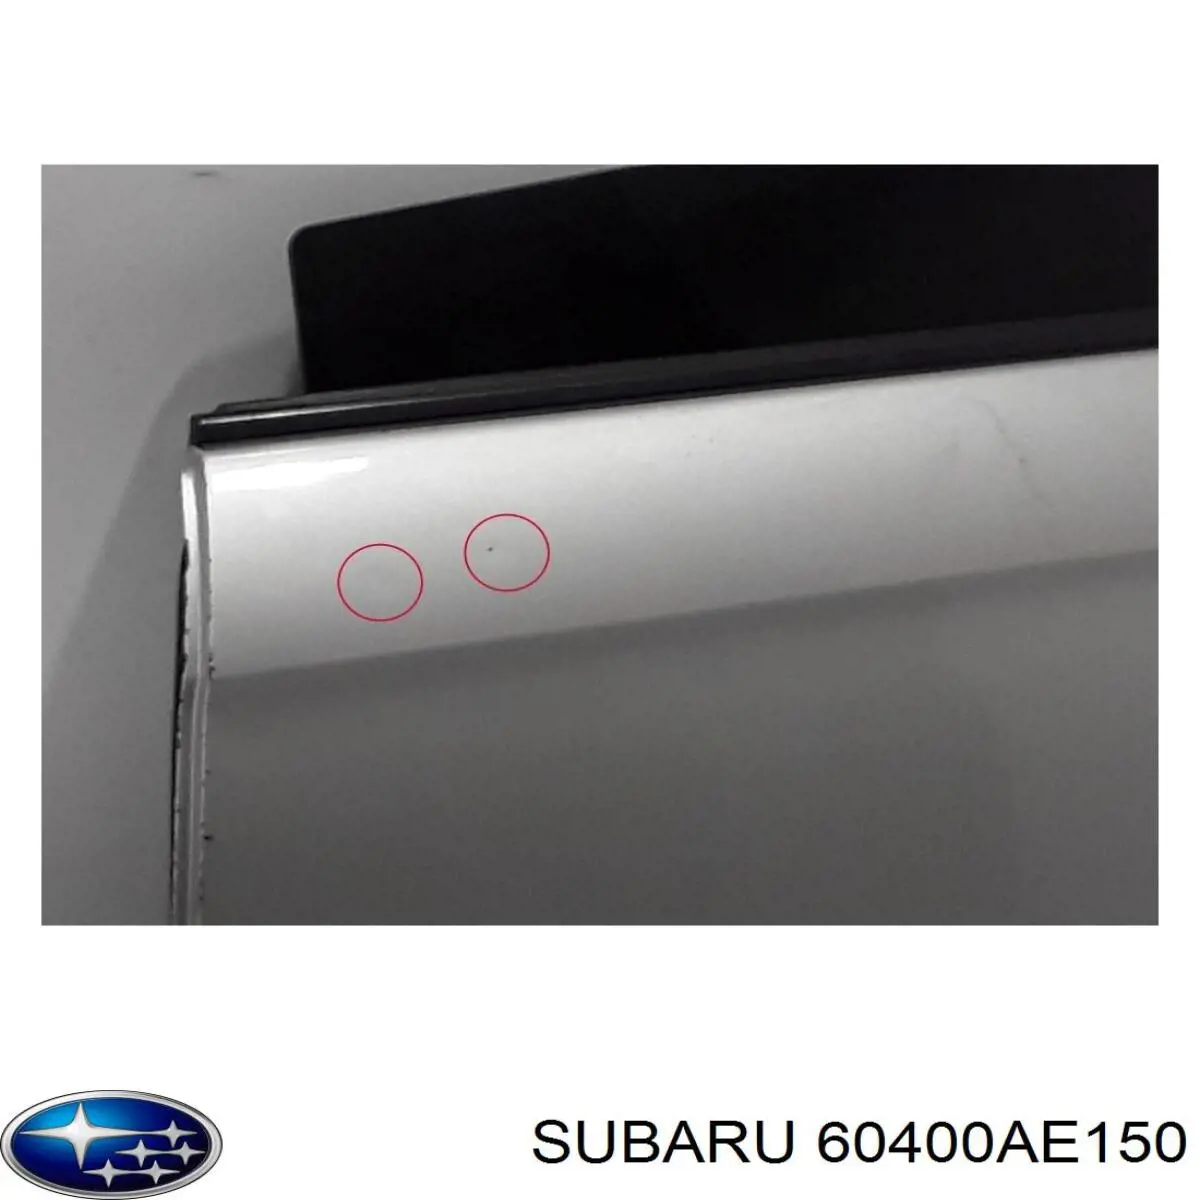 Задняя левая дверь Субару Легаси 3 (Subaru Legacy)